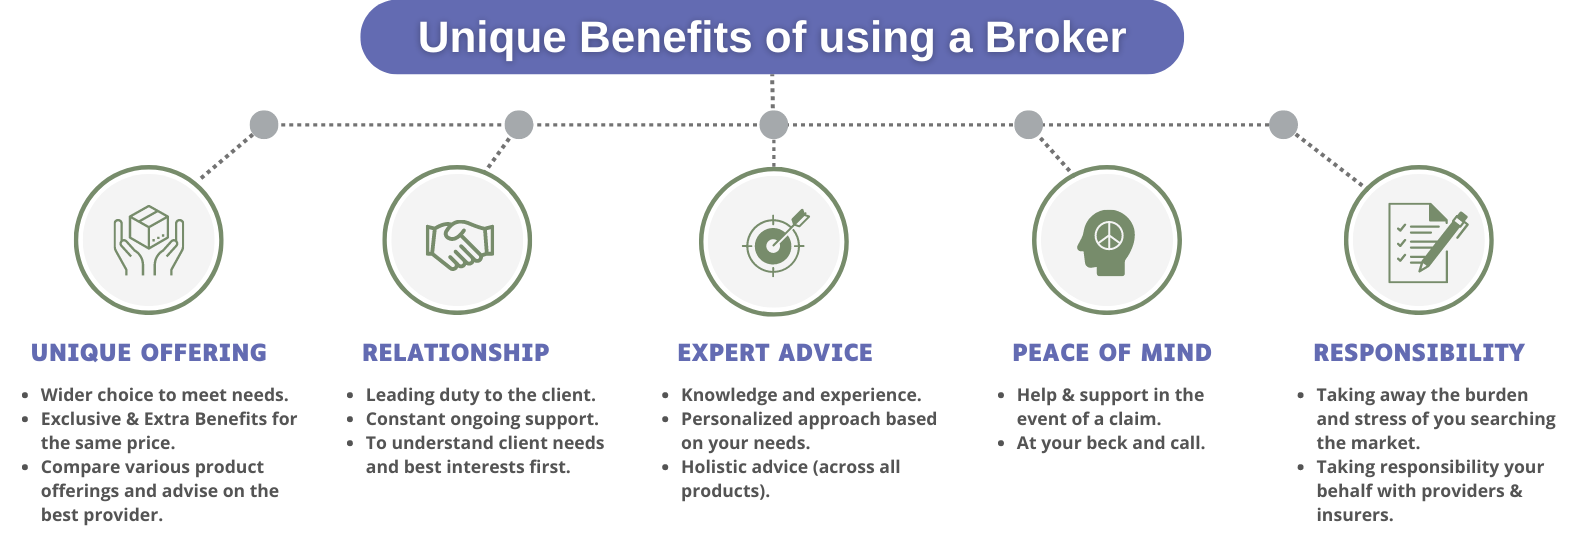 Unique benefits of using a Broker